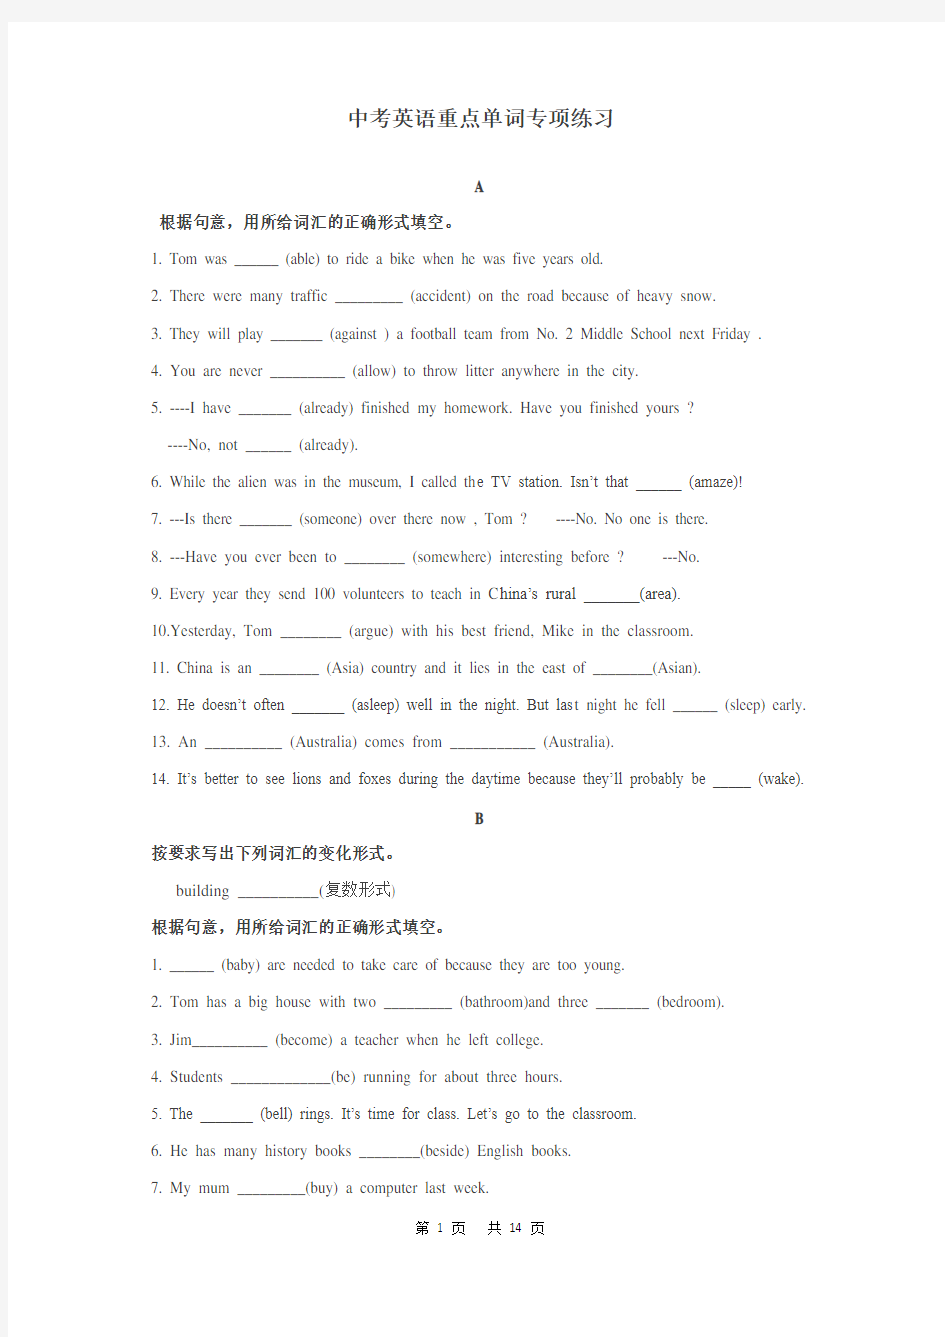 中考英语重点单词专项练习(按字母排序版)